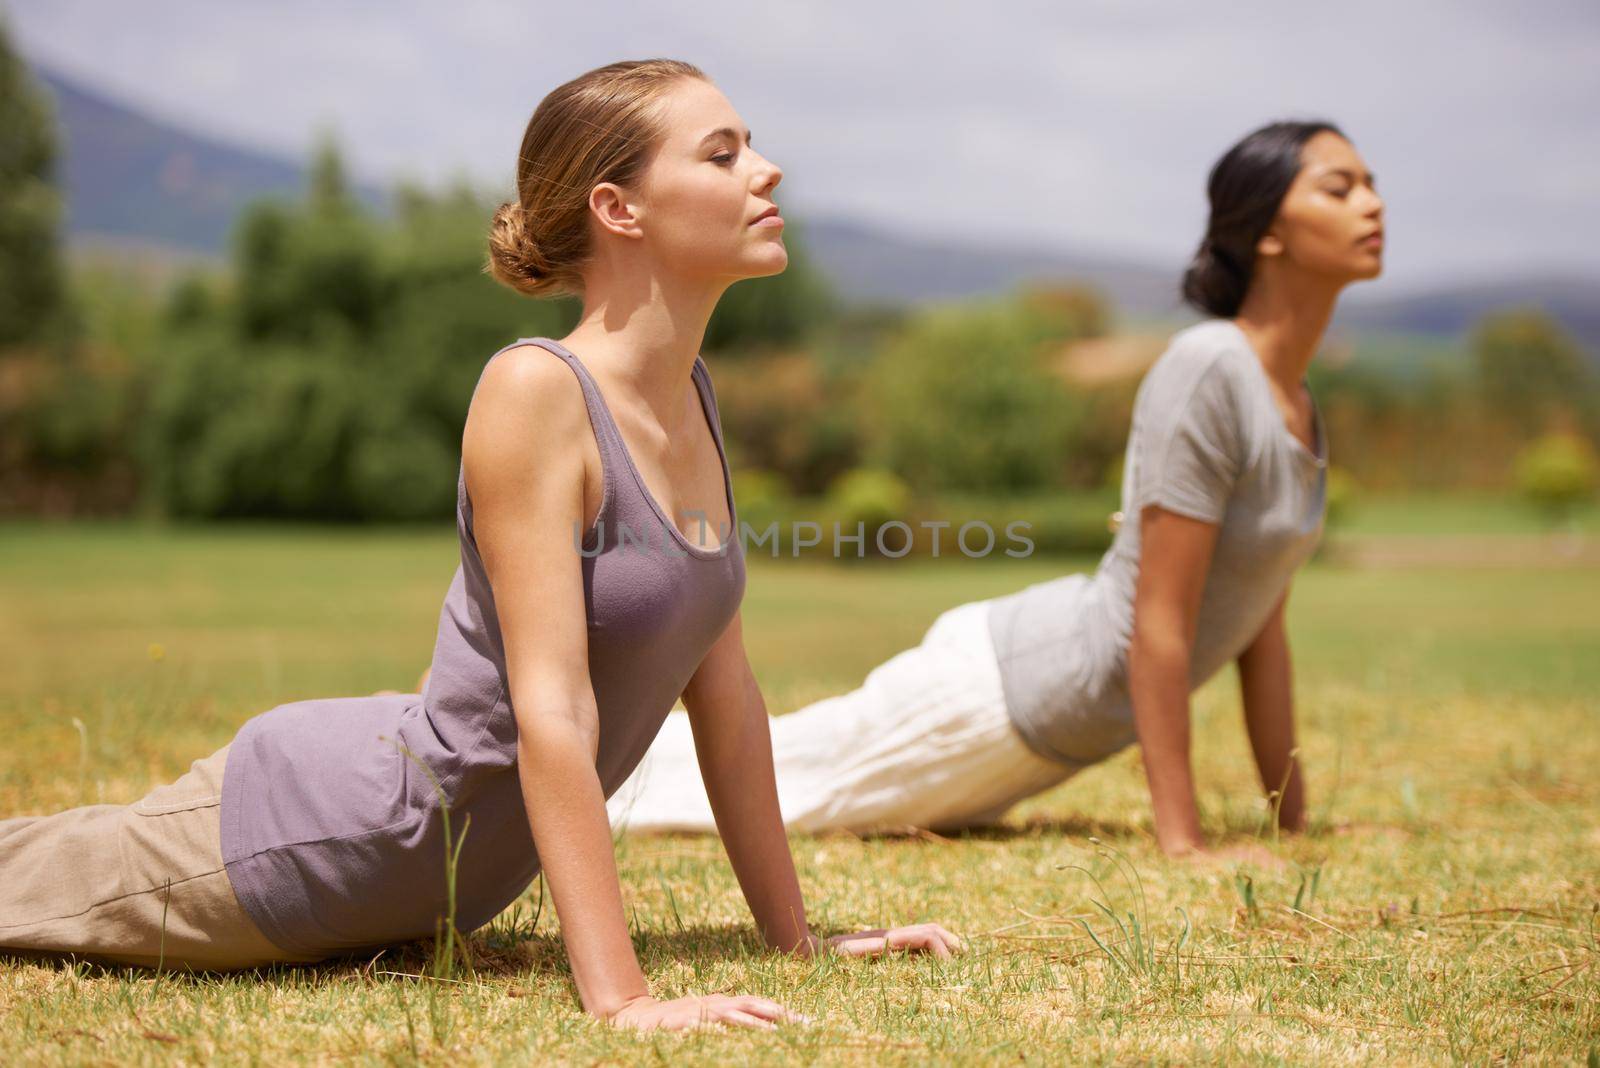 Women doing yoga outdoors.